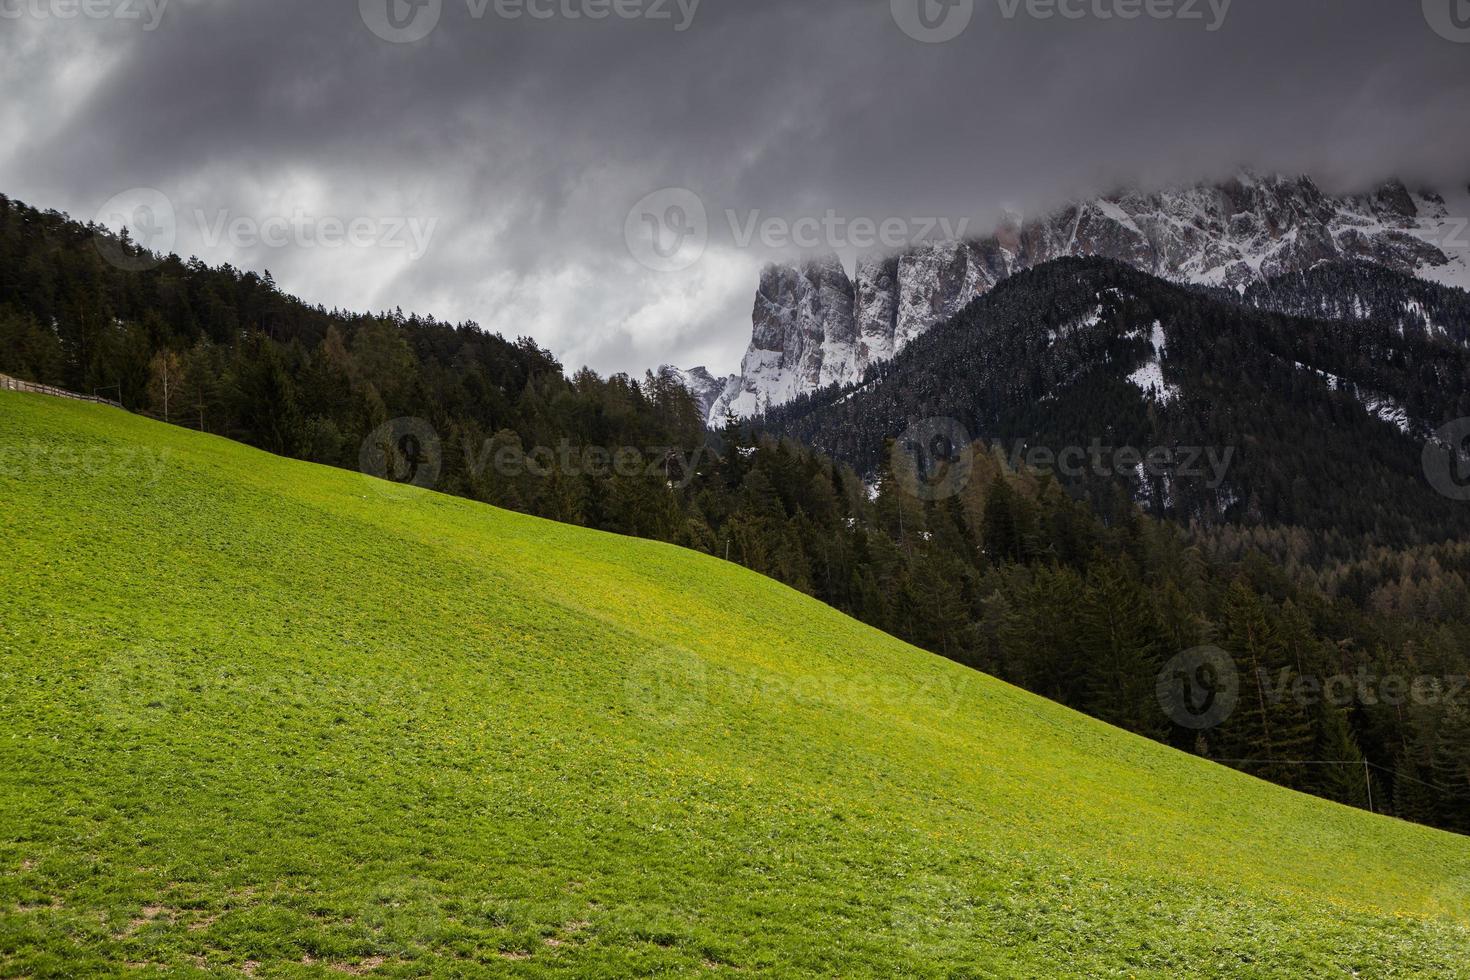 hermosos paisajes de montaña en los Alpes foto